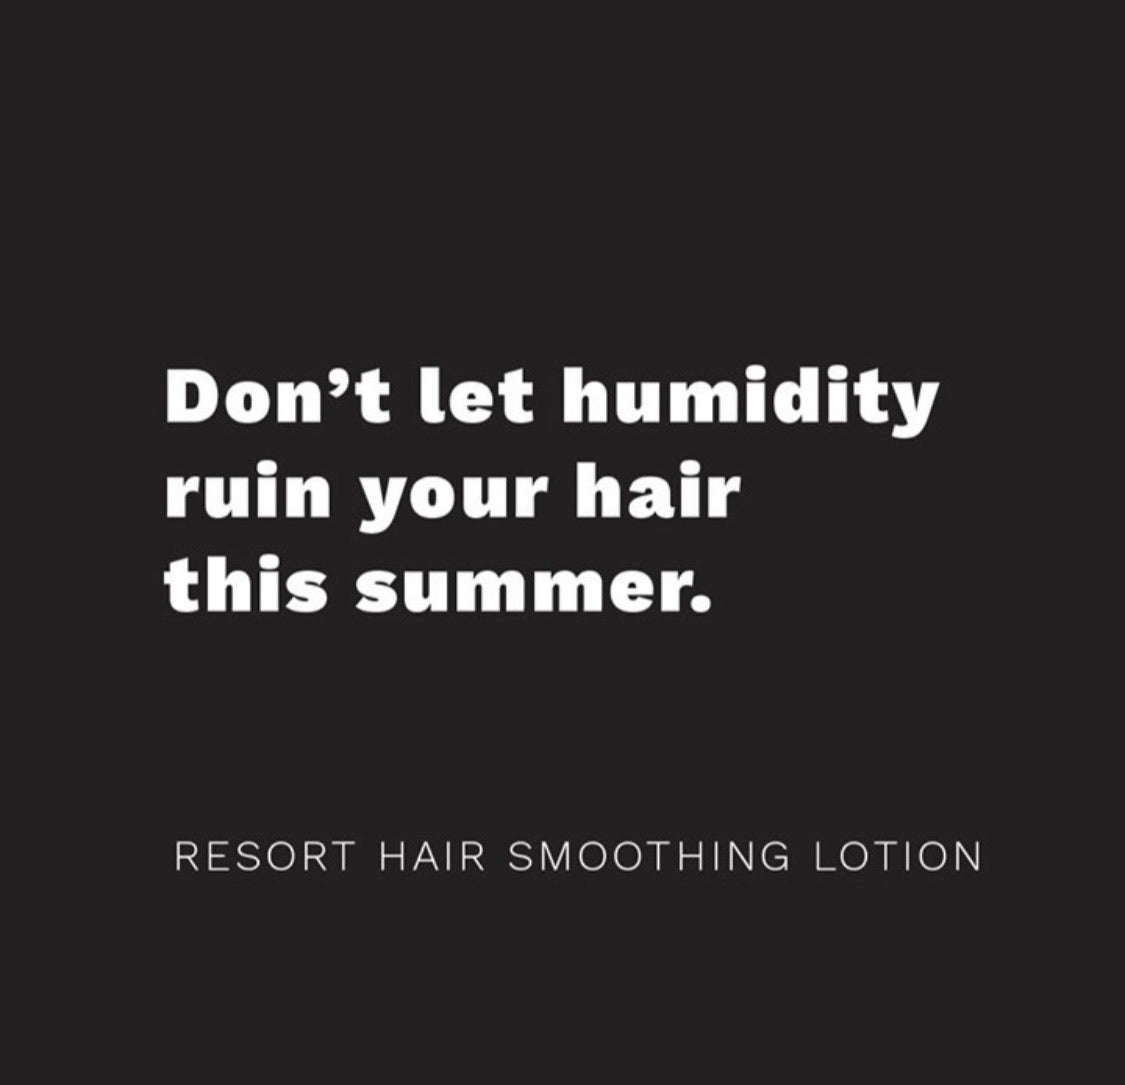 Resort - Hair Smoothing Lotion